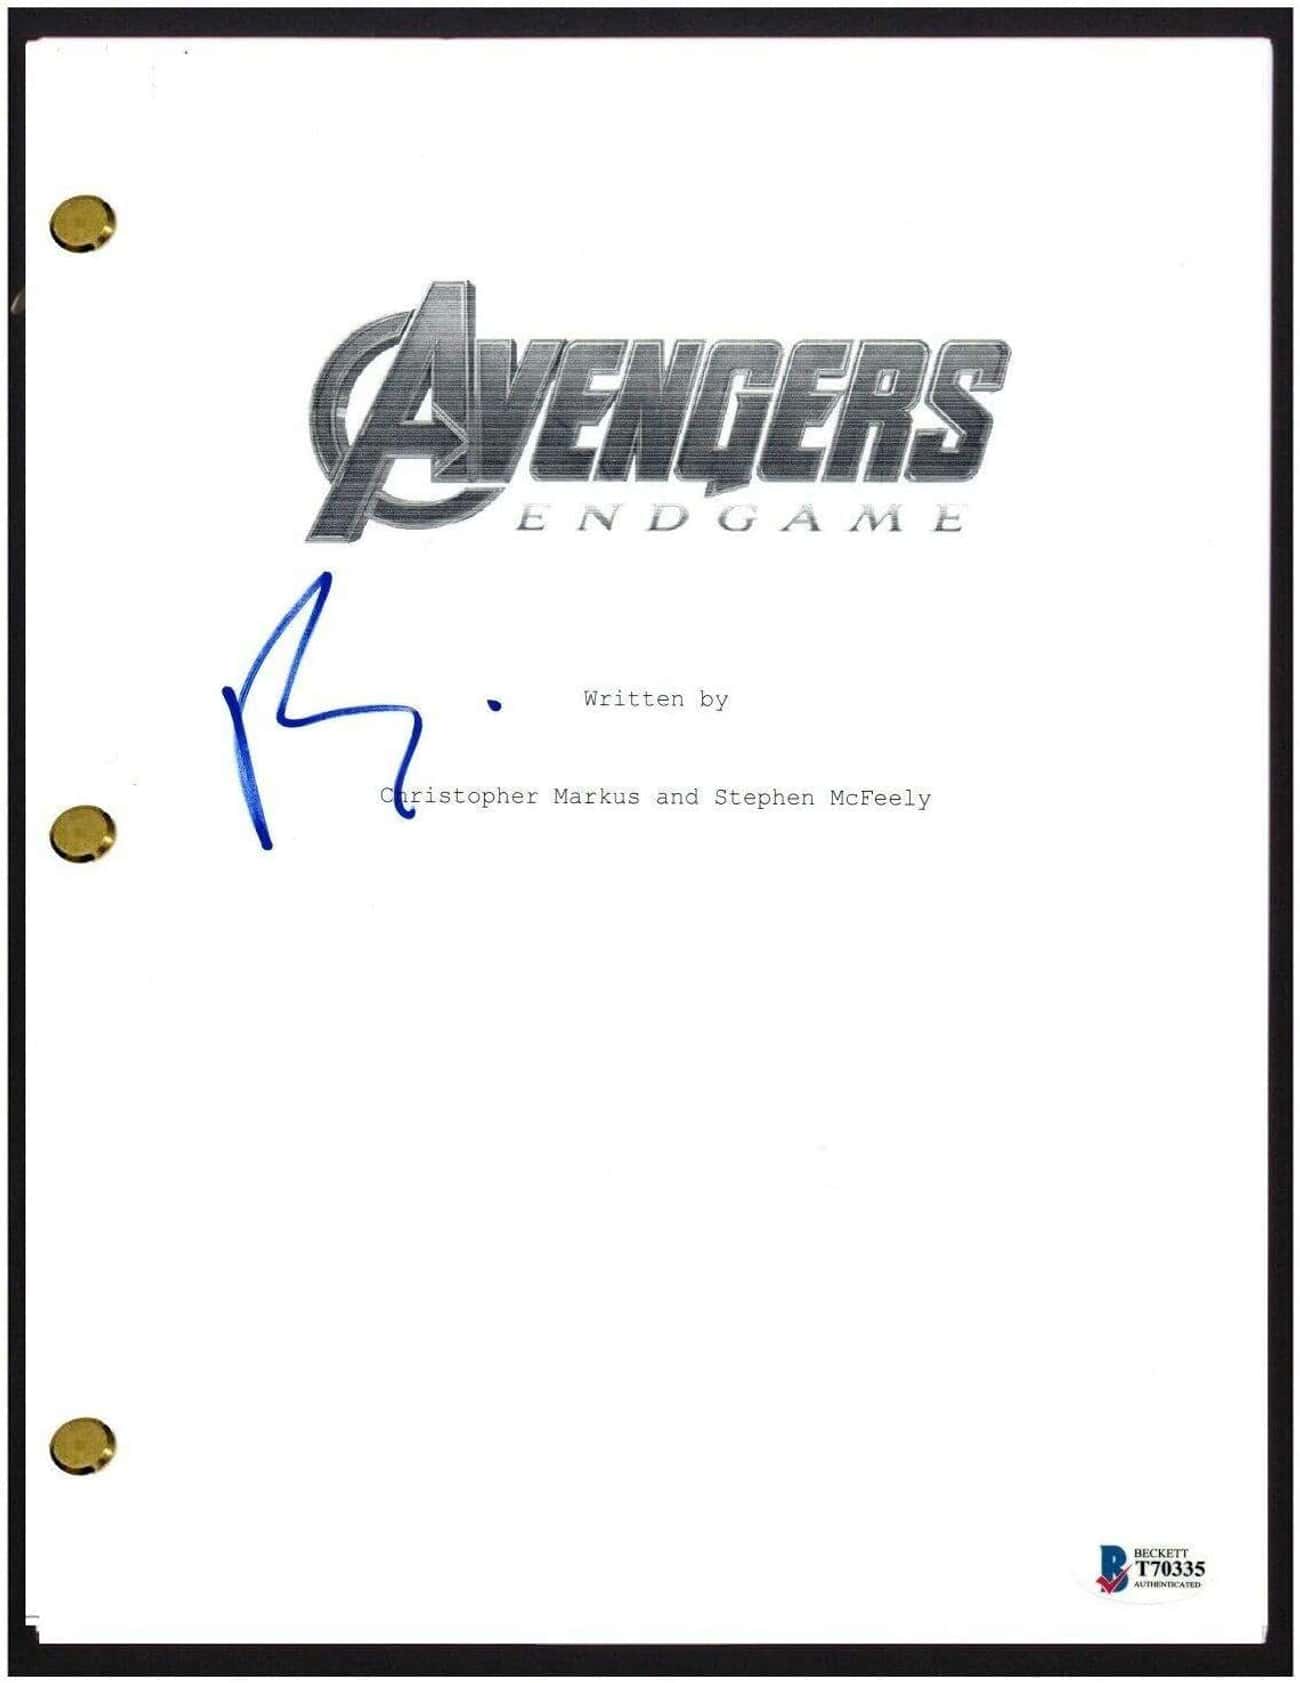 Scripts for Avengers: Infinity War & Avengers: Endgame